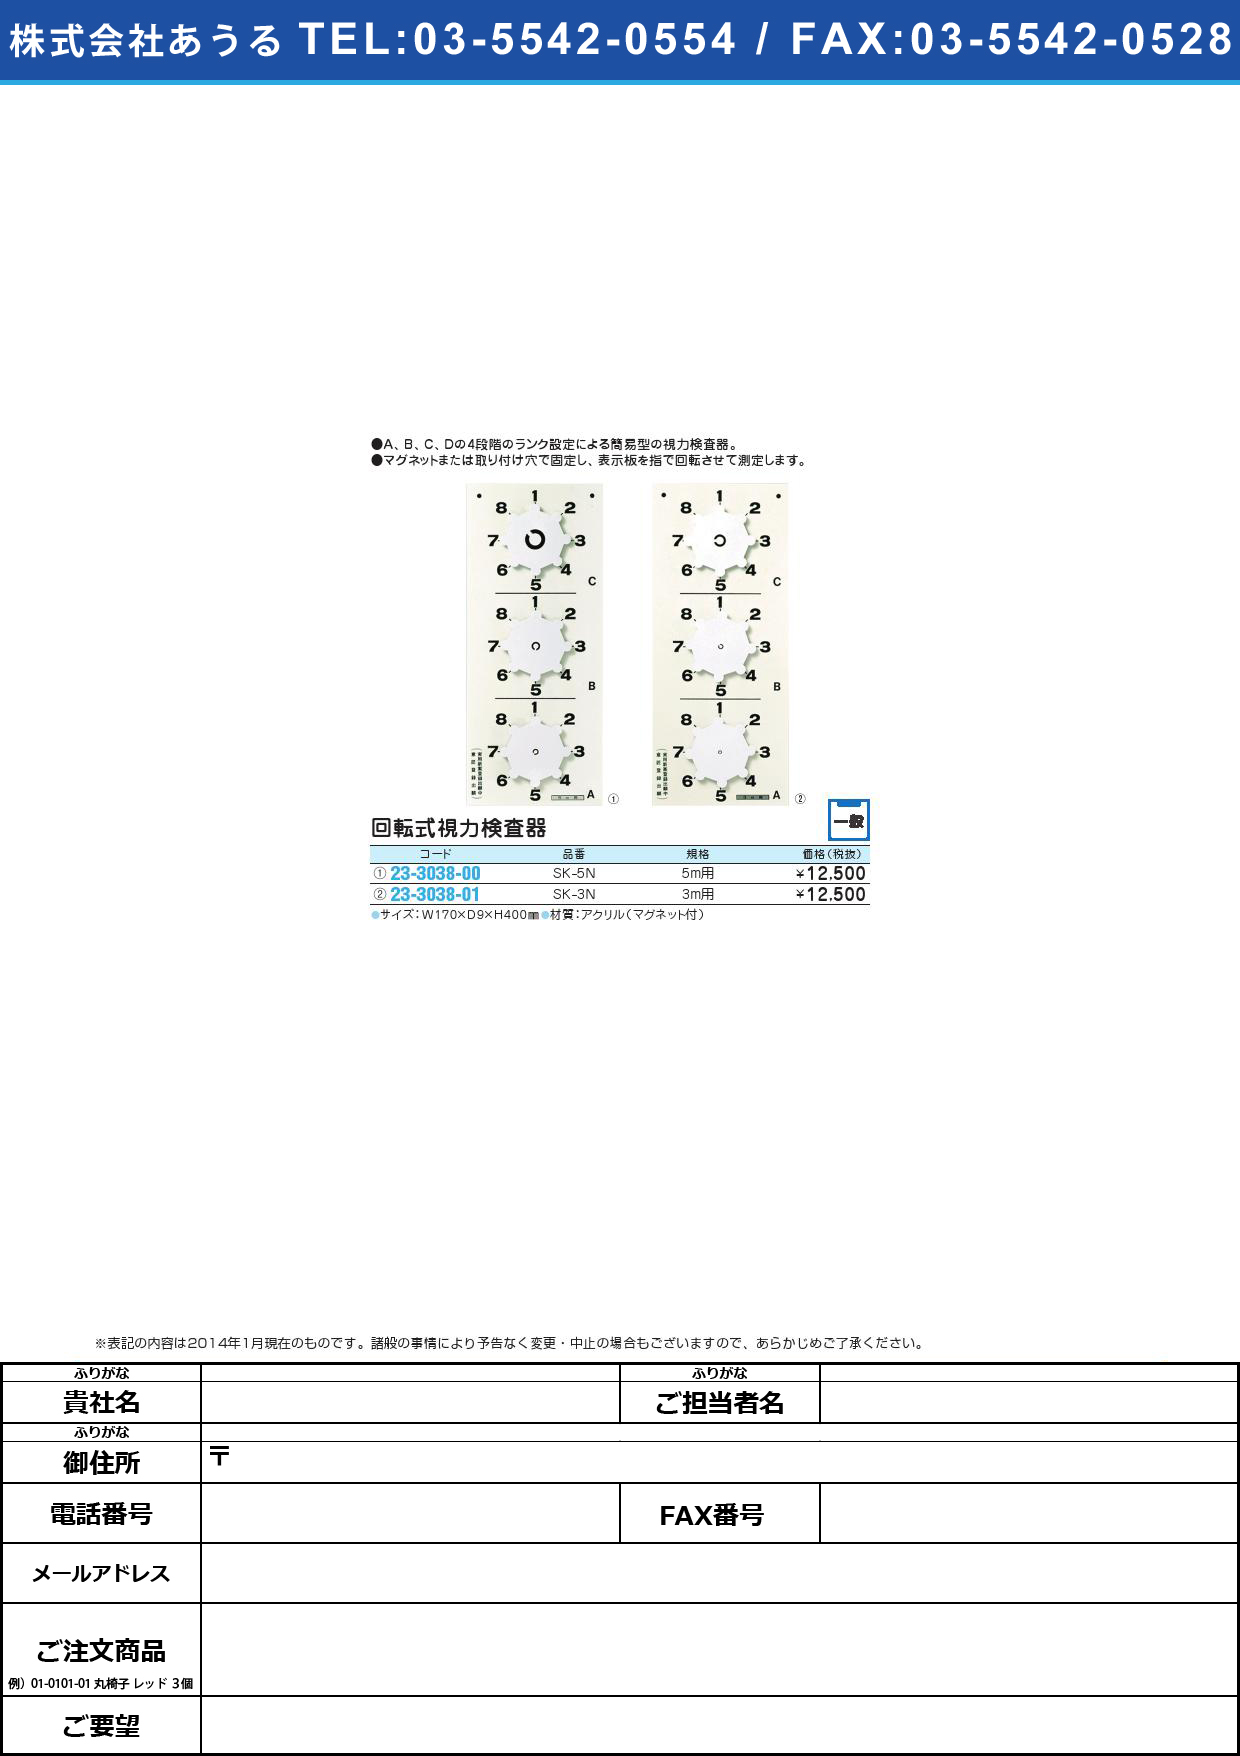 回転式視力検査器（３ｍ用） ｶｲﾃﾝｼｷｼﾘｮｸｹﾝｻｷ(3Mﾖｳ)(23-3038-01)SK-3N【1台単位】【2014年カタログ商品】